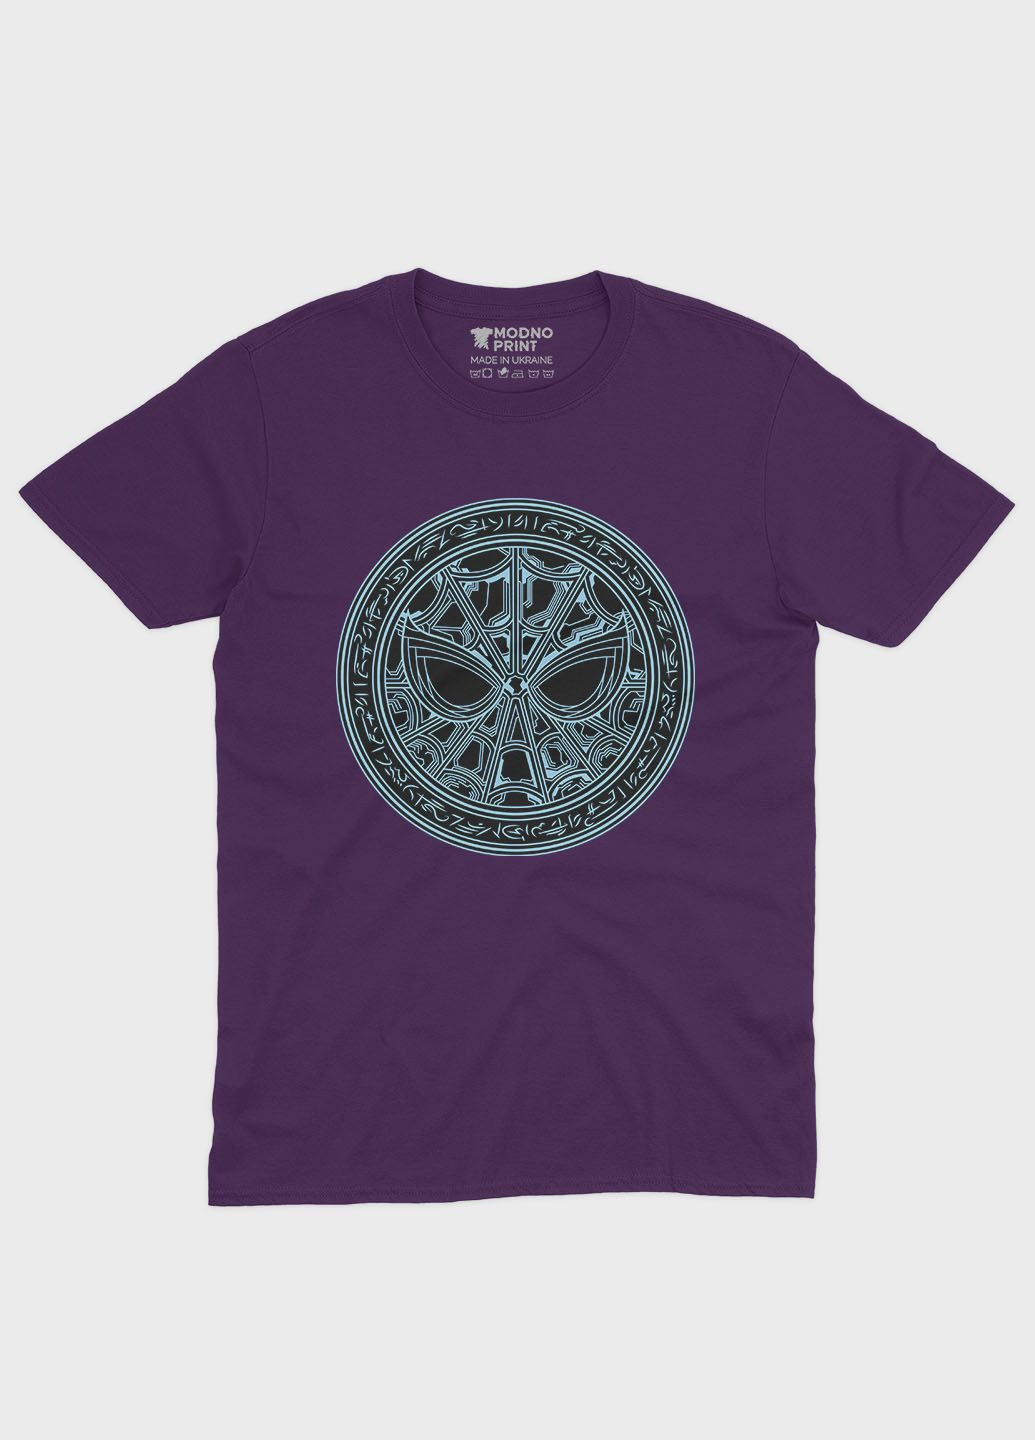 Фіолетова демісезонна футболка для дівчинки з принтом супергероя - людина-павук (ts001-1-dby-006-014-088-g) Modno